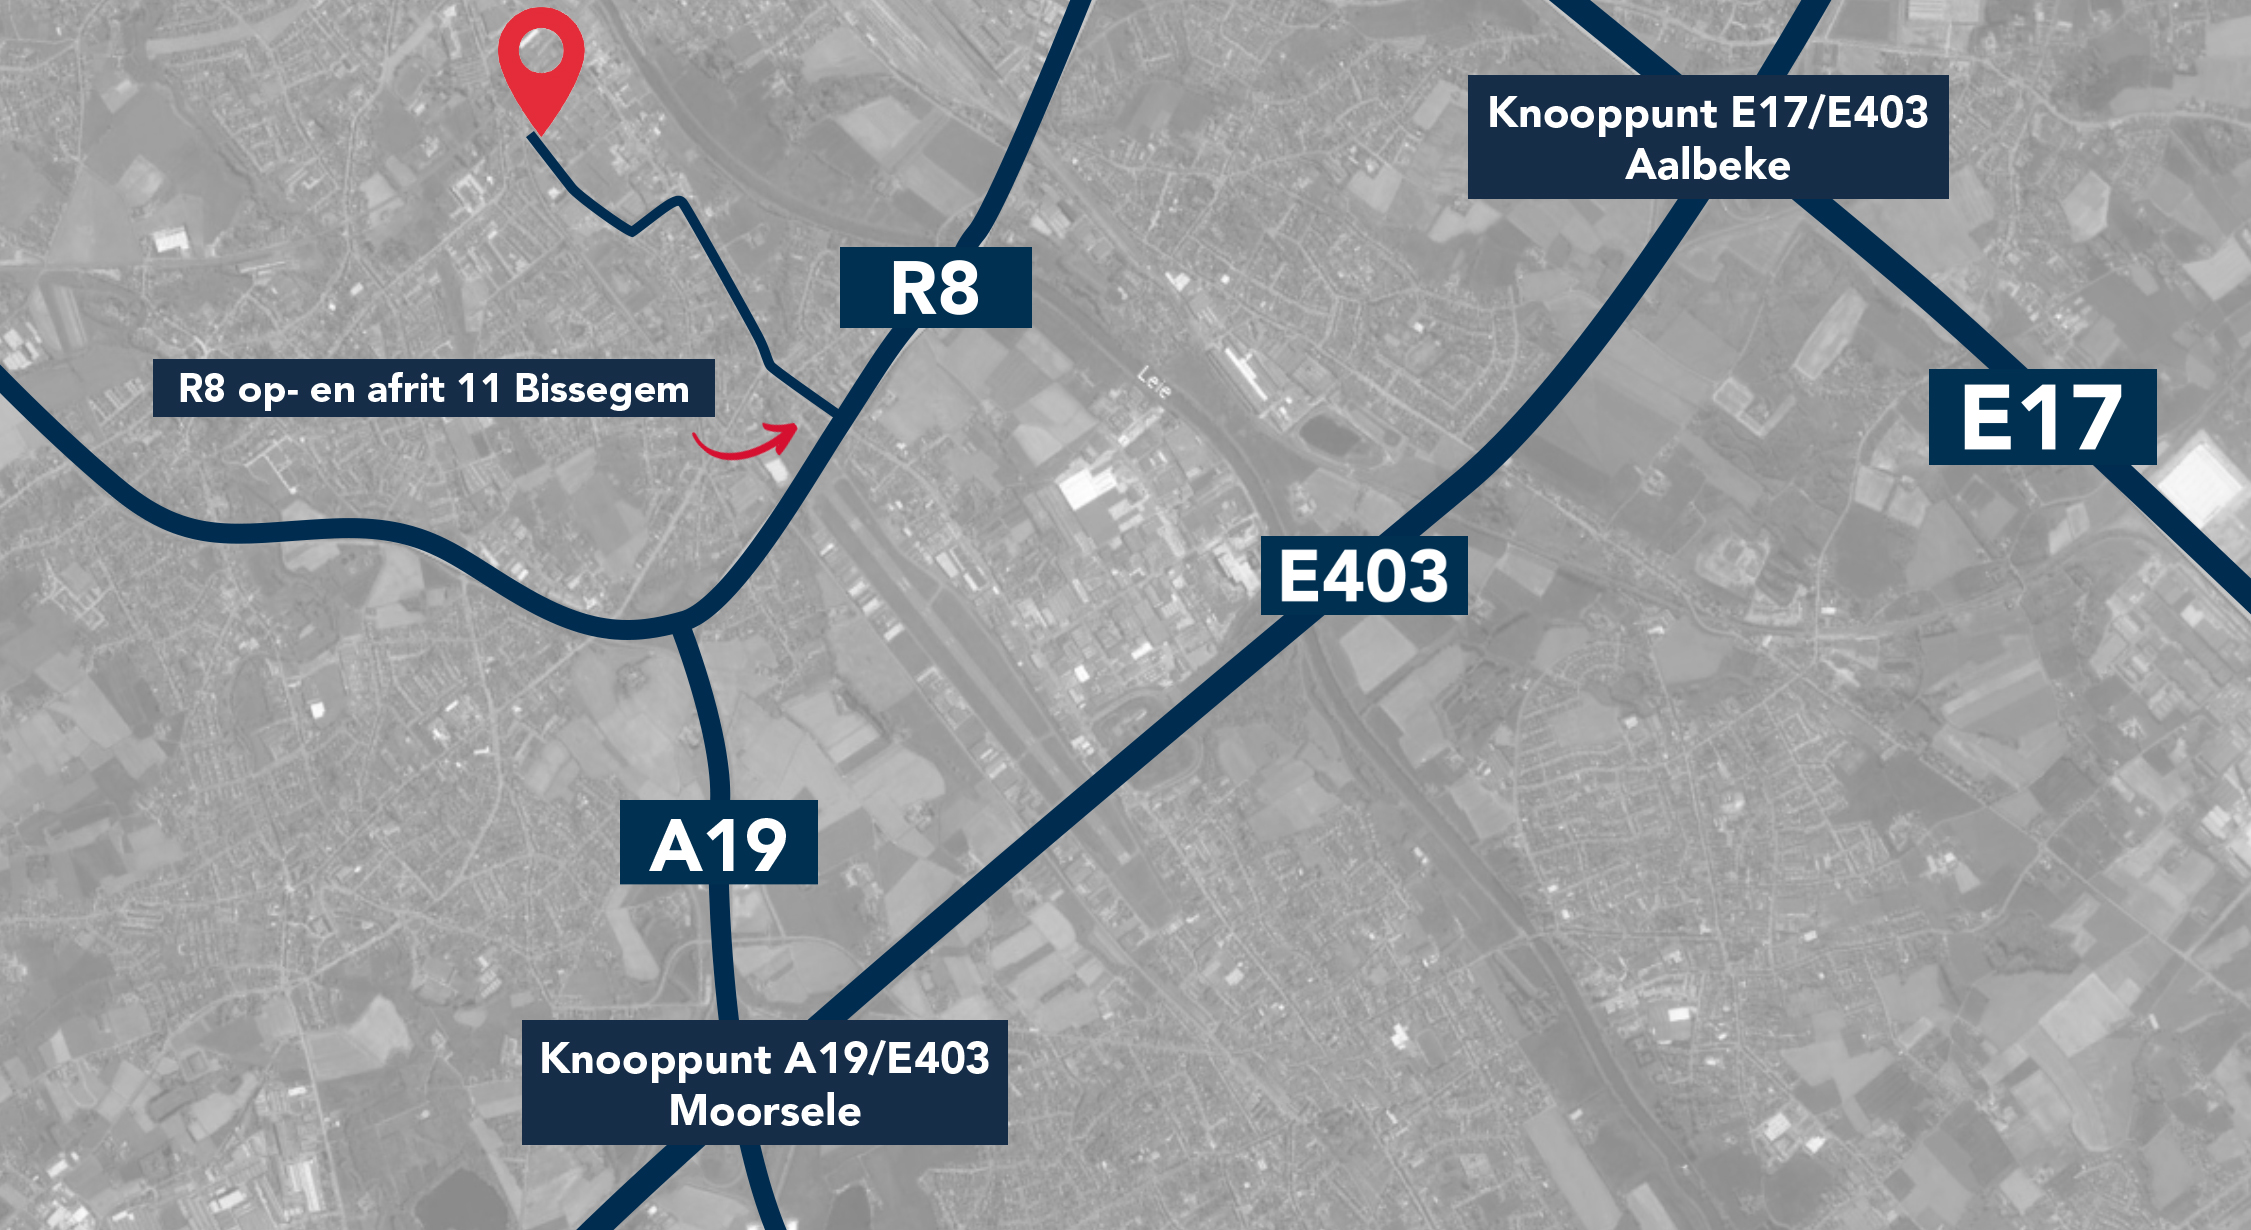 De site is fantastisch gelegen nabij de R8 met een vlotte verbinding naar de A19, E403 en E17.